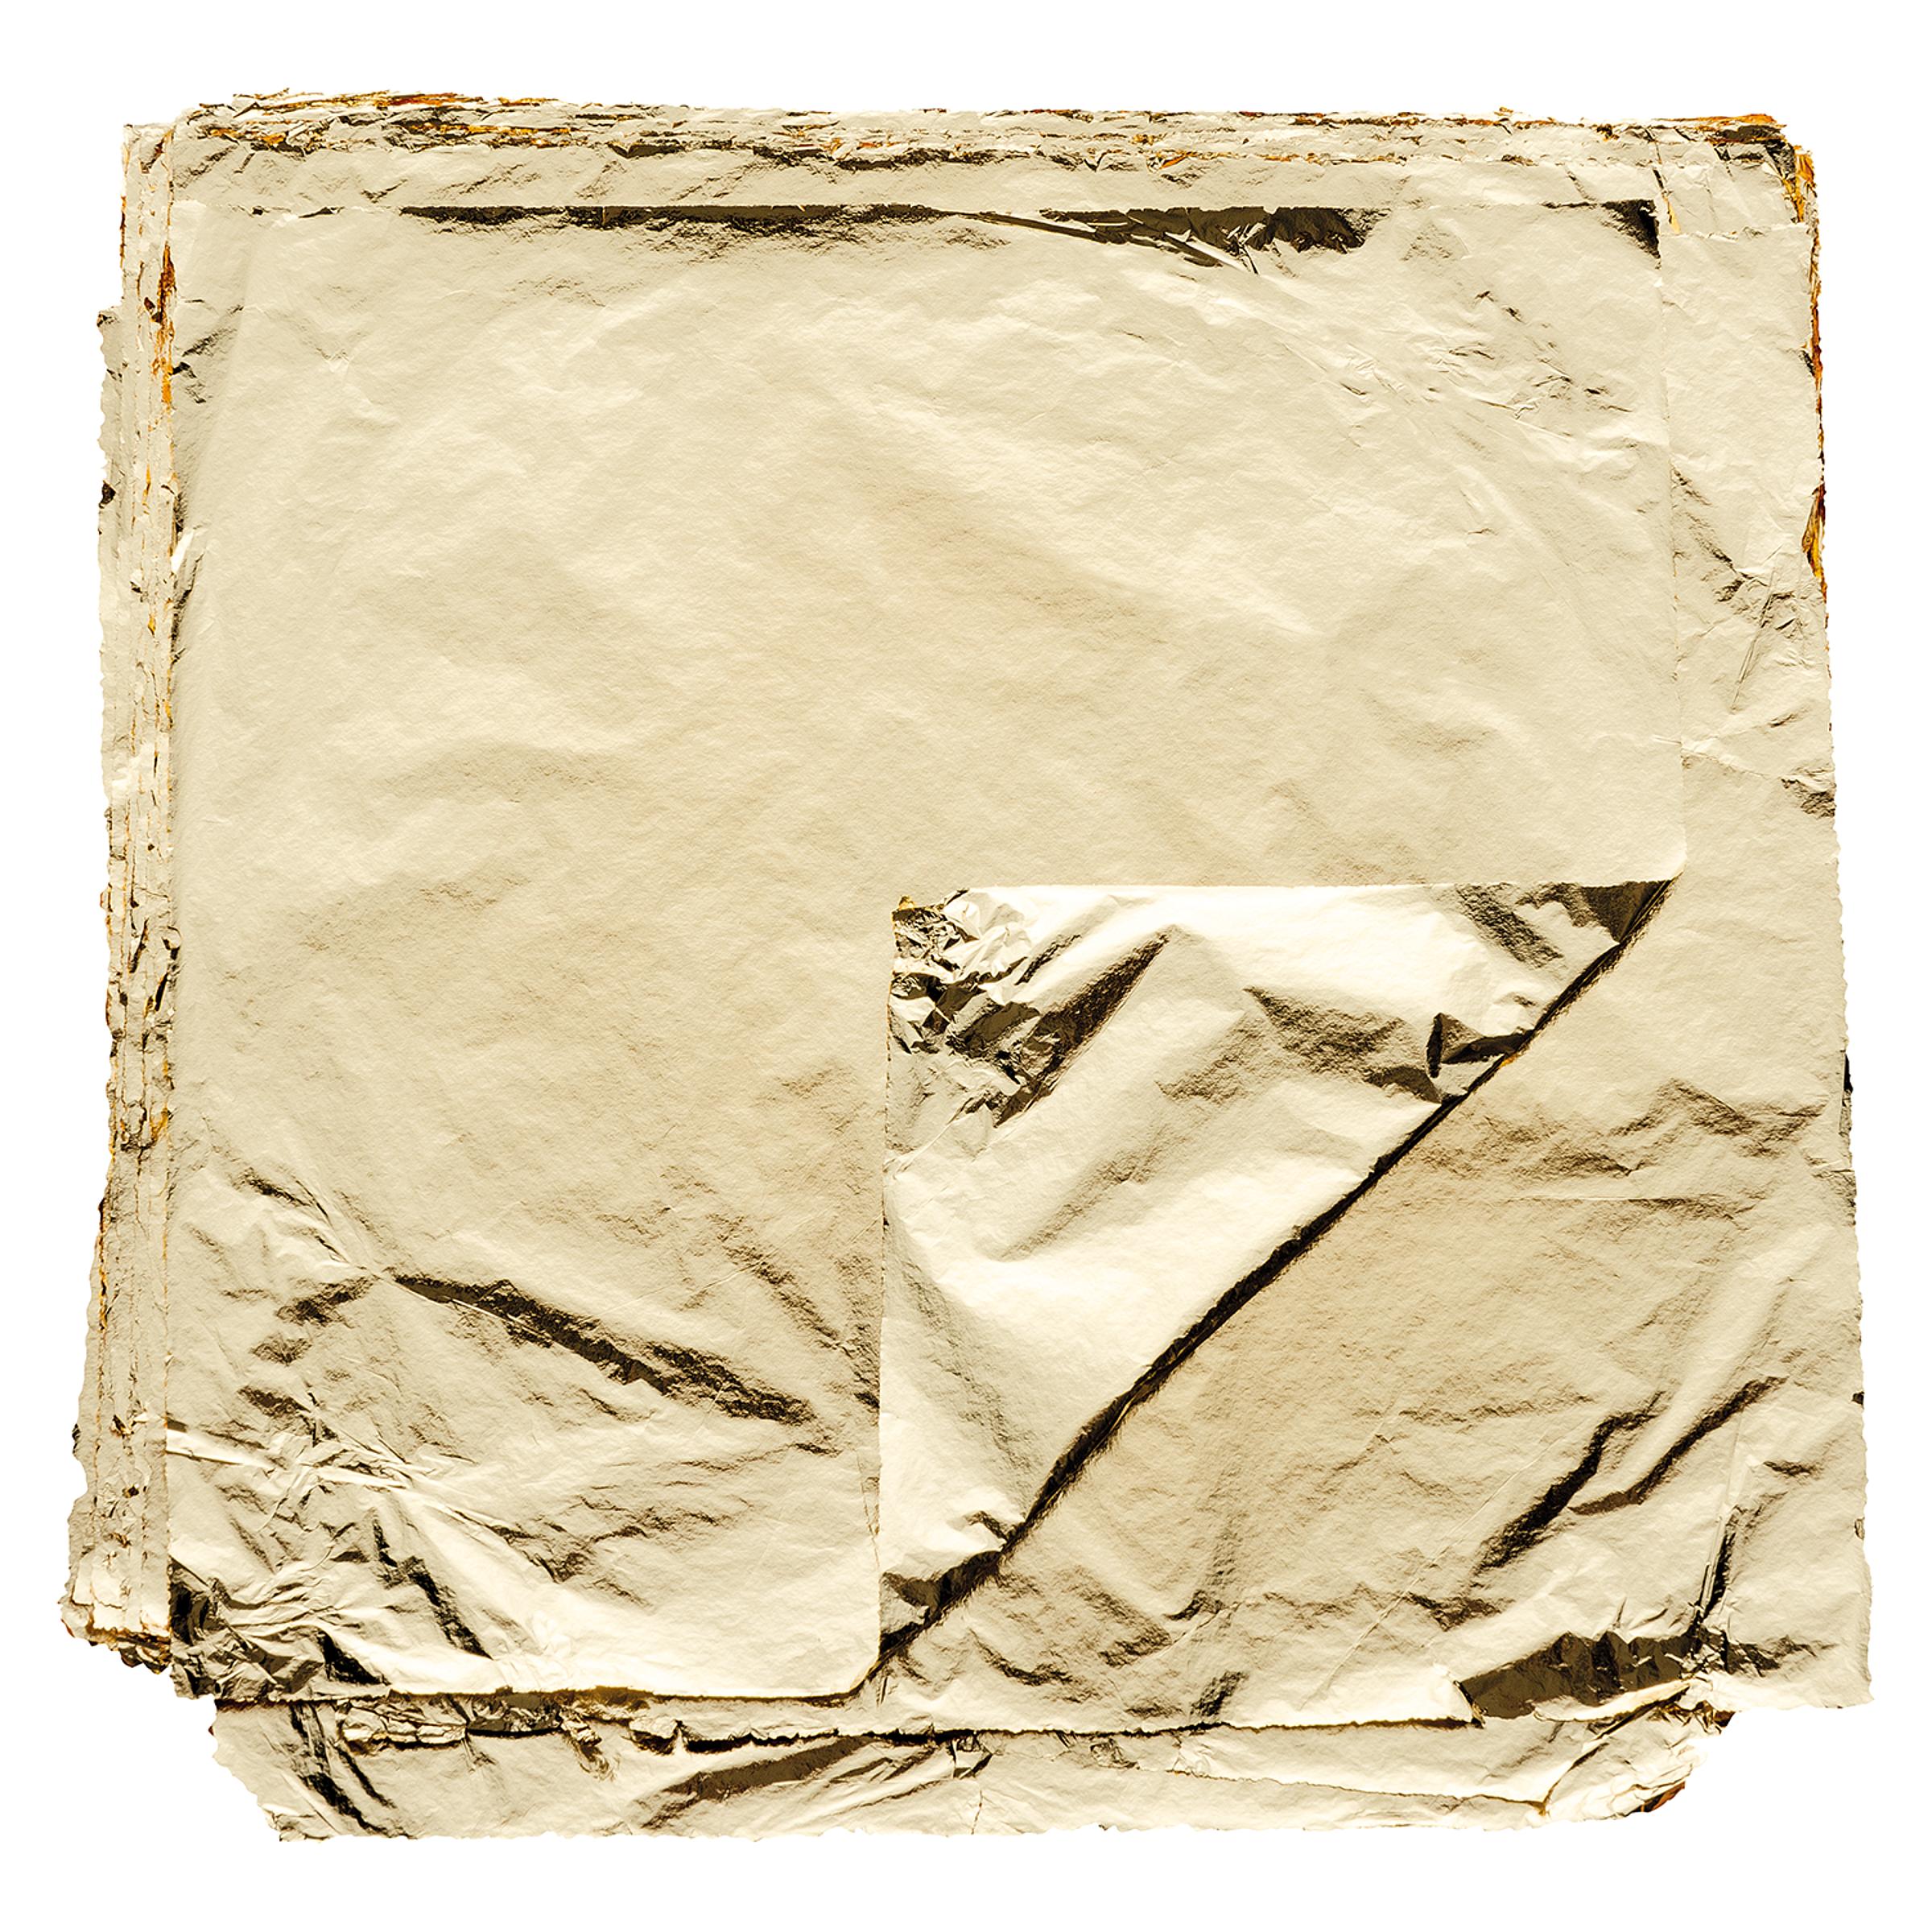 1 x Anlegemilch im Stift Schlagmetall 4,5 x 4,5 cm Imit. 100 Blatt Blattgold 